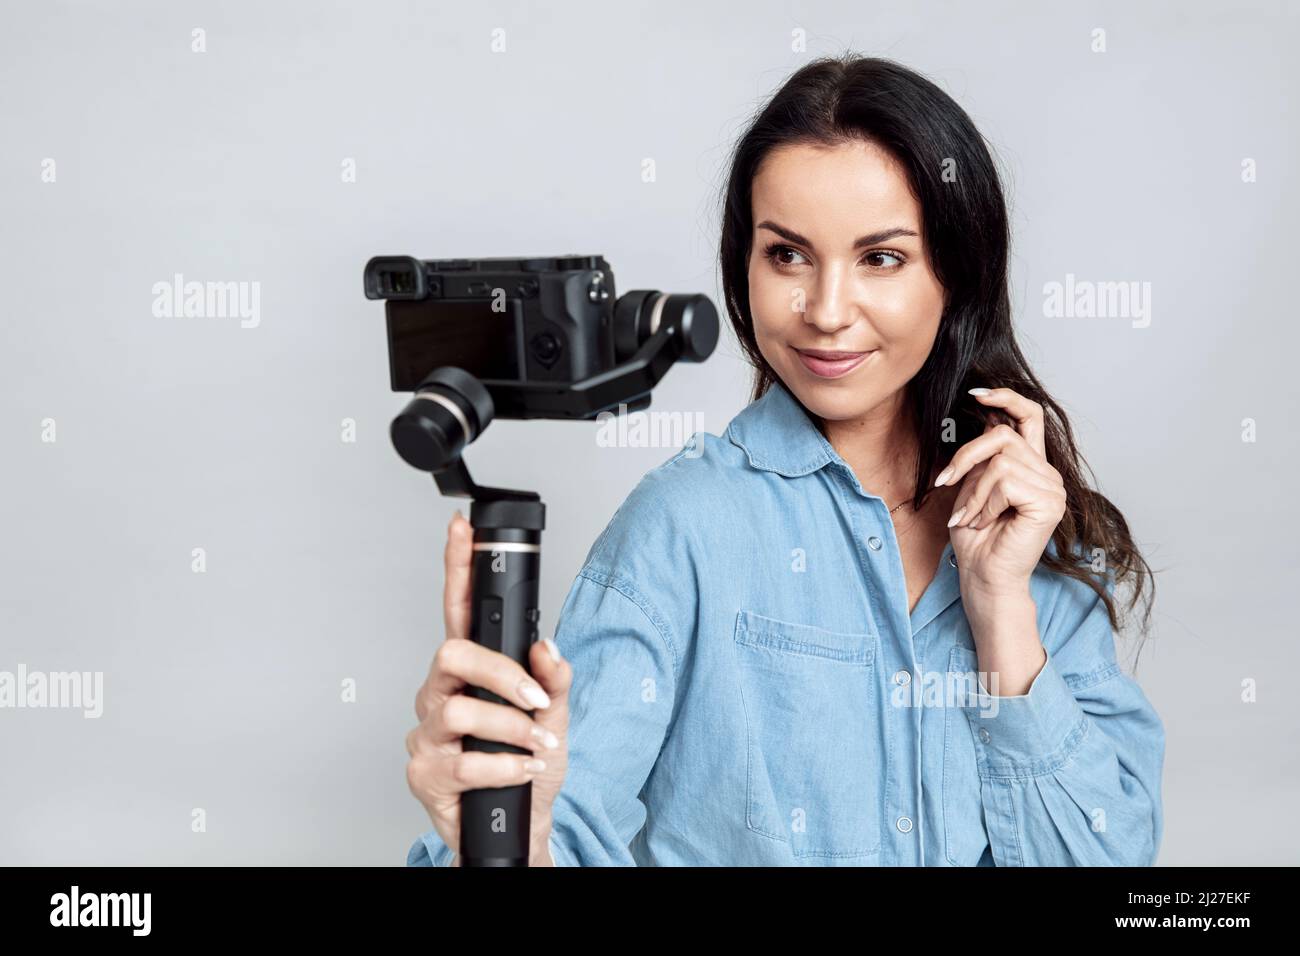 Jeune femme attirante prend un selfie en utilisant la caméra sur la nacelle Banque D'Images